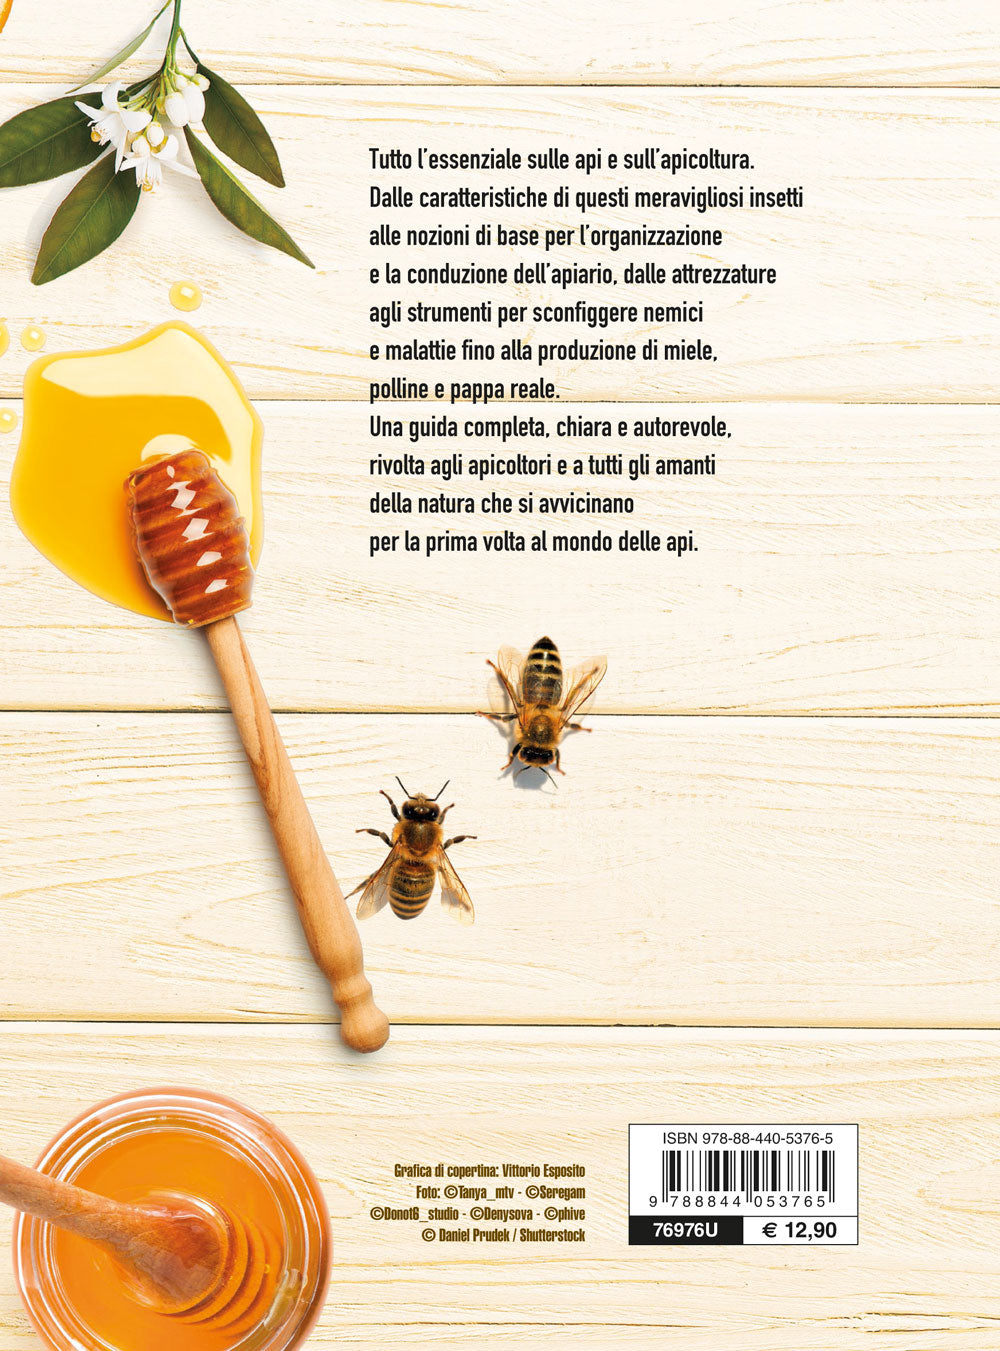 Il libro del miele. Dall'alveare al raccolto